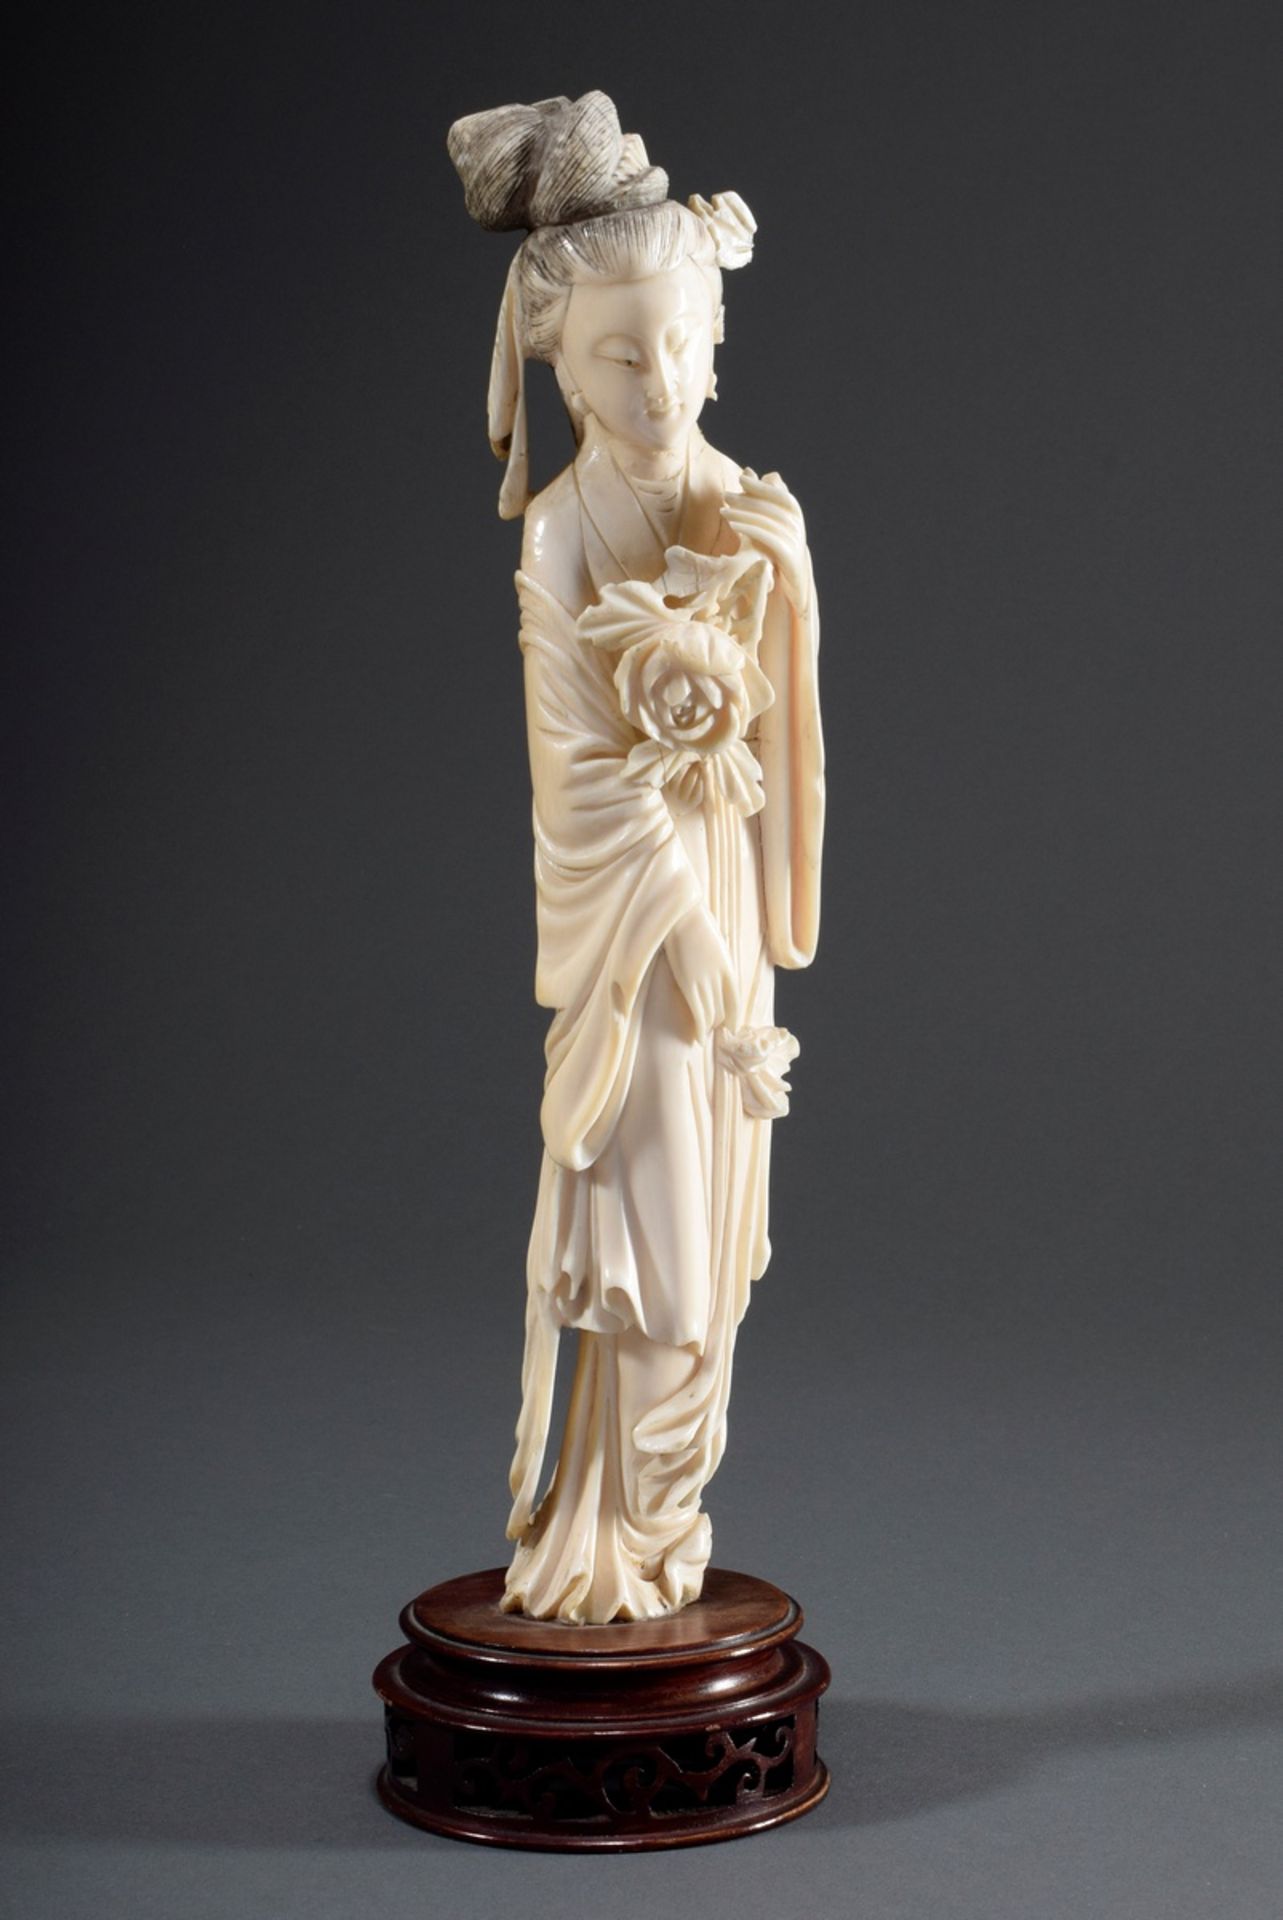 Chinesischen Elfenbein Schnitzerei "Glücksgöttin | Chinese ivory carving "Goddess of Fortune Benten